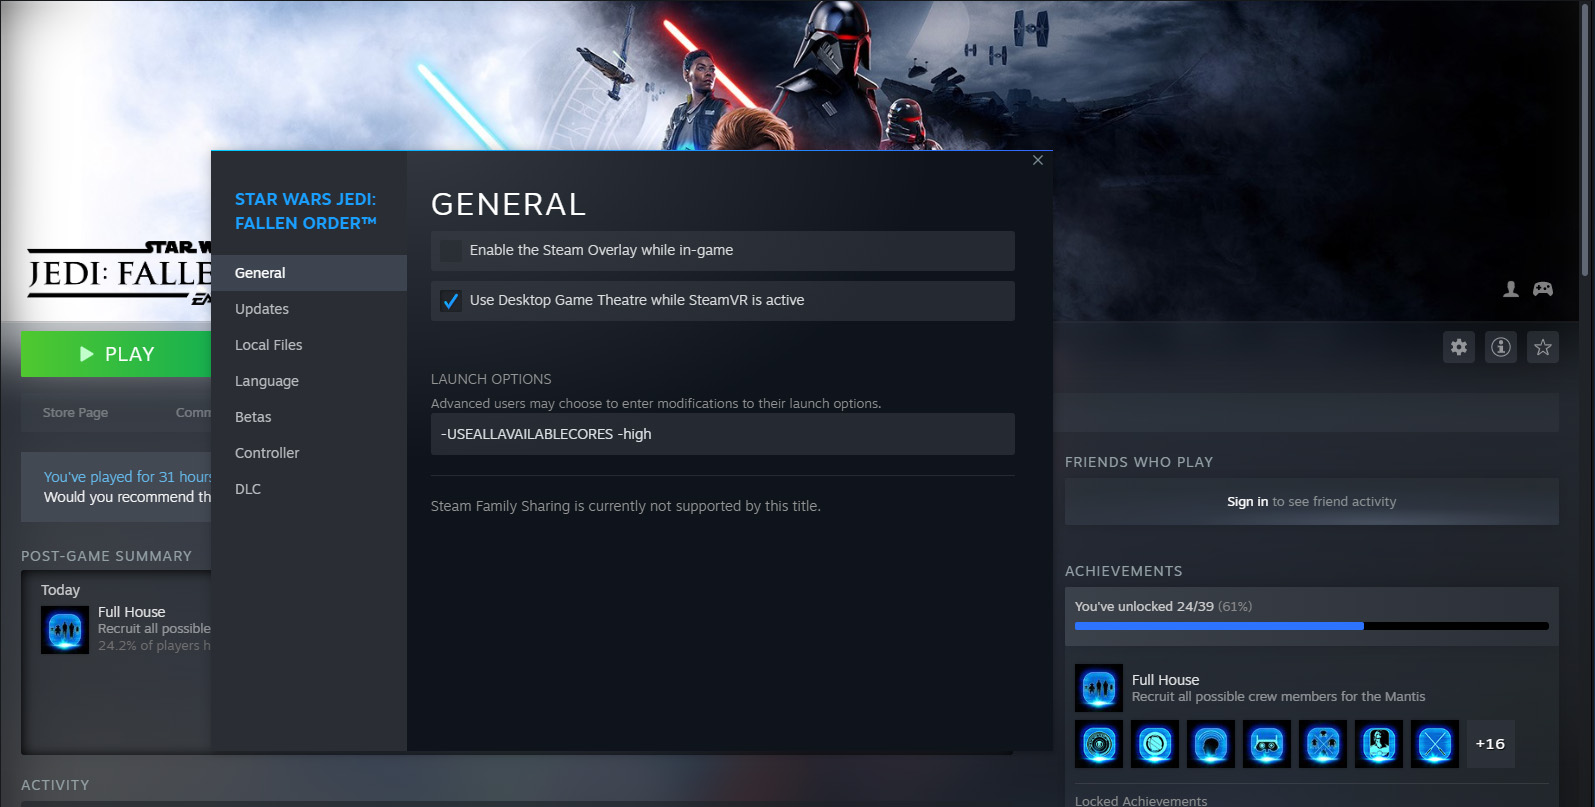 STAR WARS Jedi: Fallen Order™ on Steam